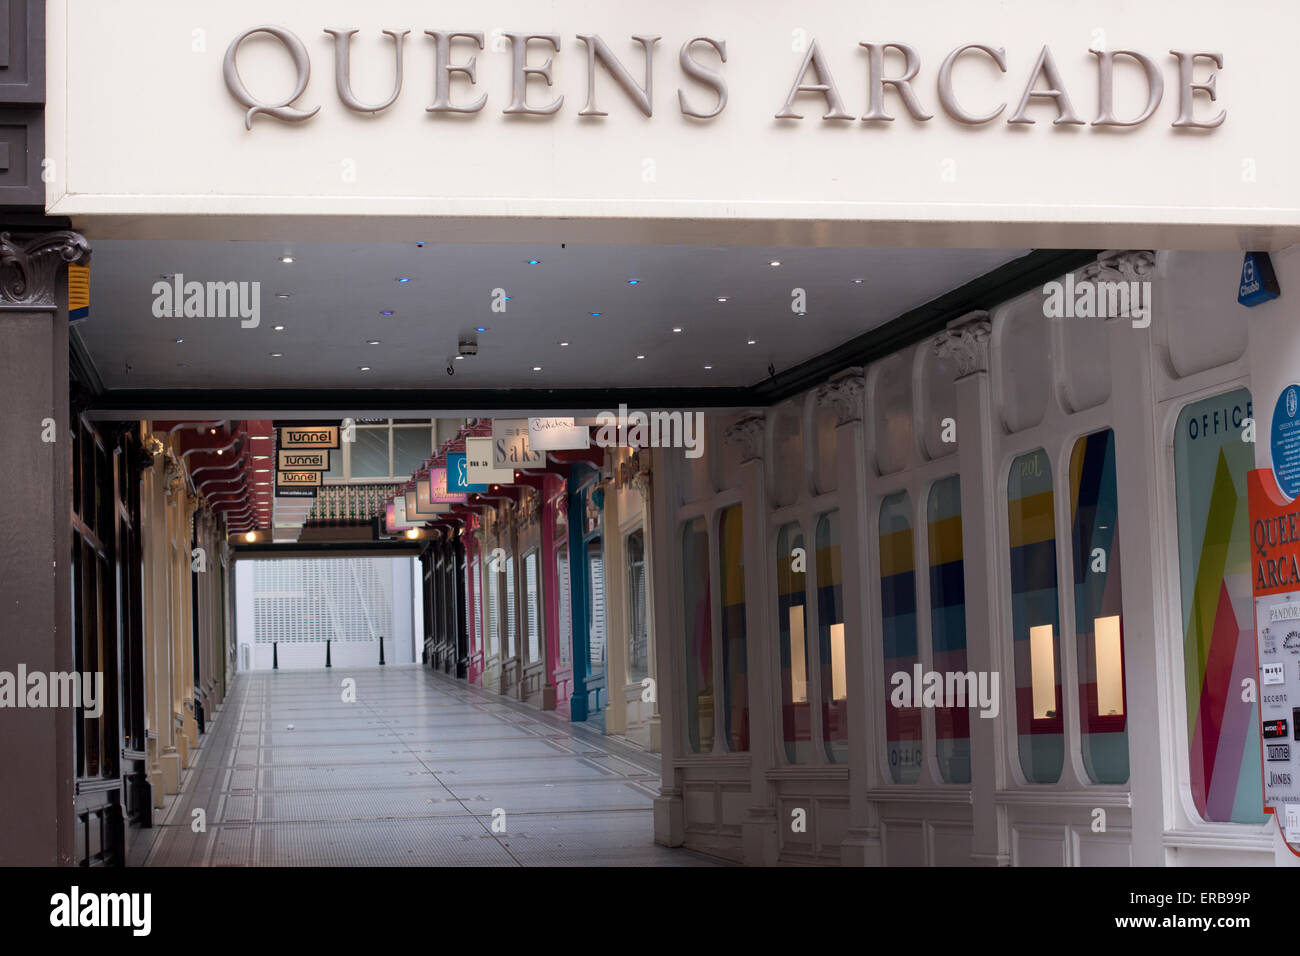 Queens arcade in Leeds, UK Stock Photo